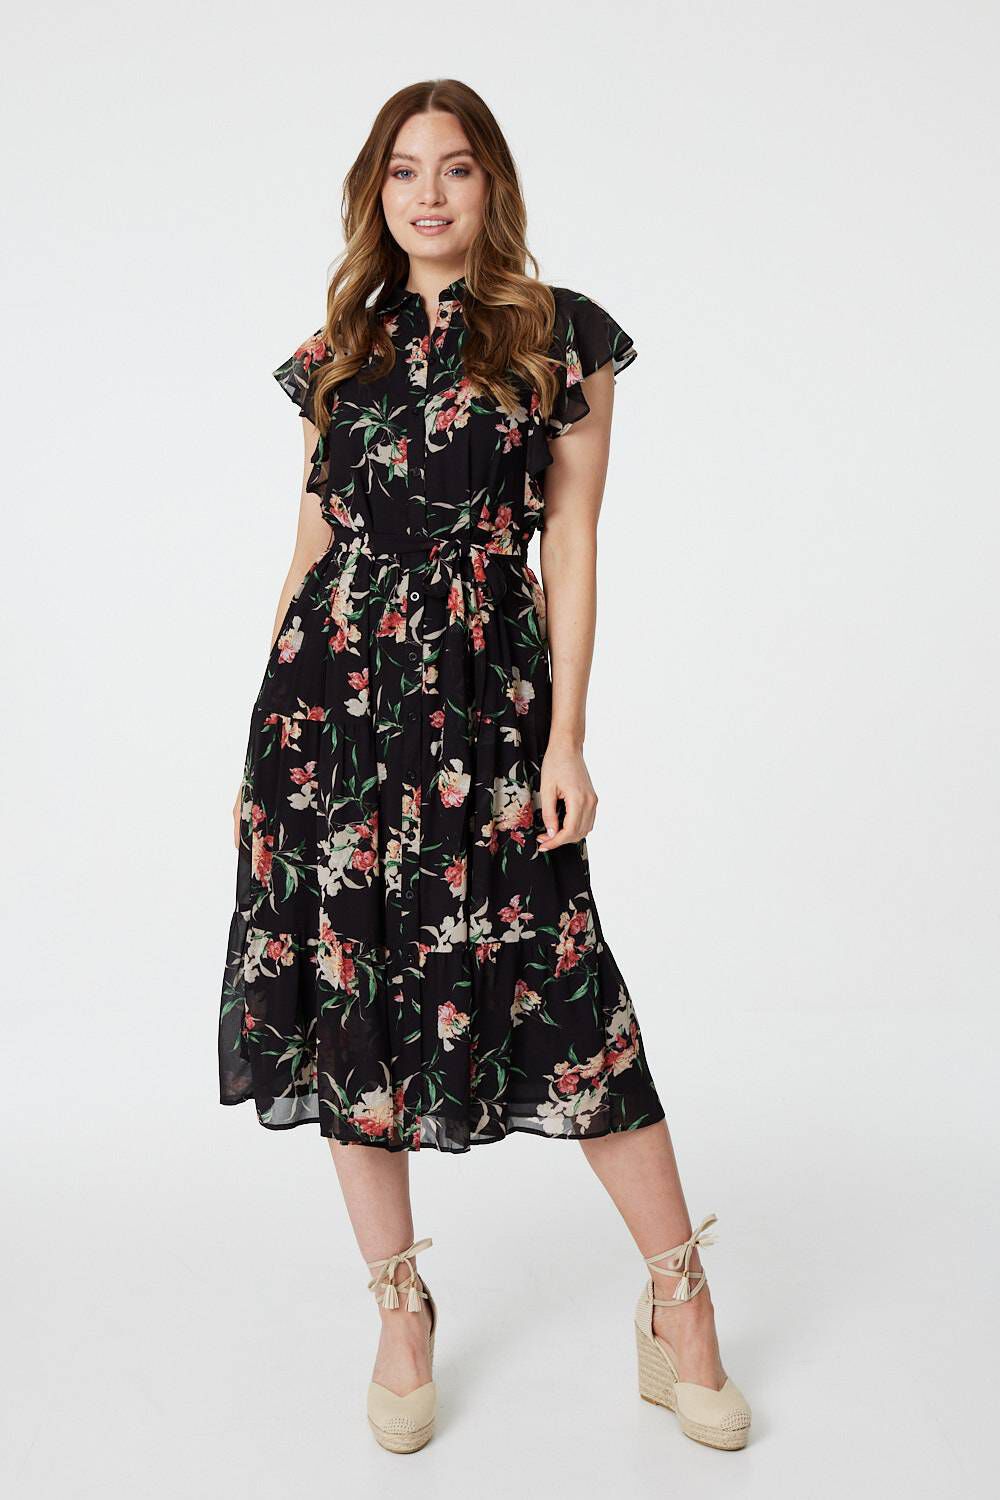 Izabel London Black - Floral Angel Sleeve Shirt Dress, Size: 14